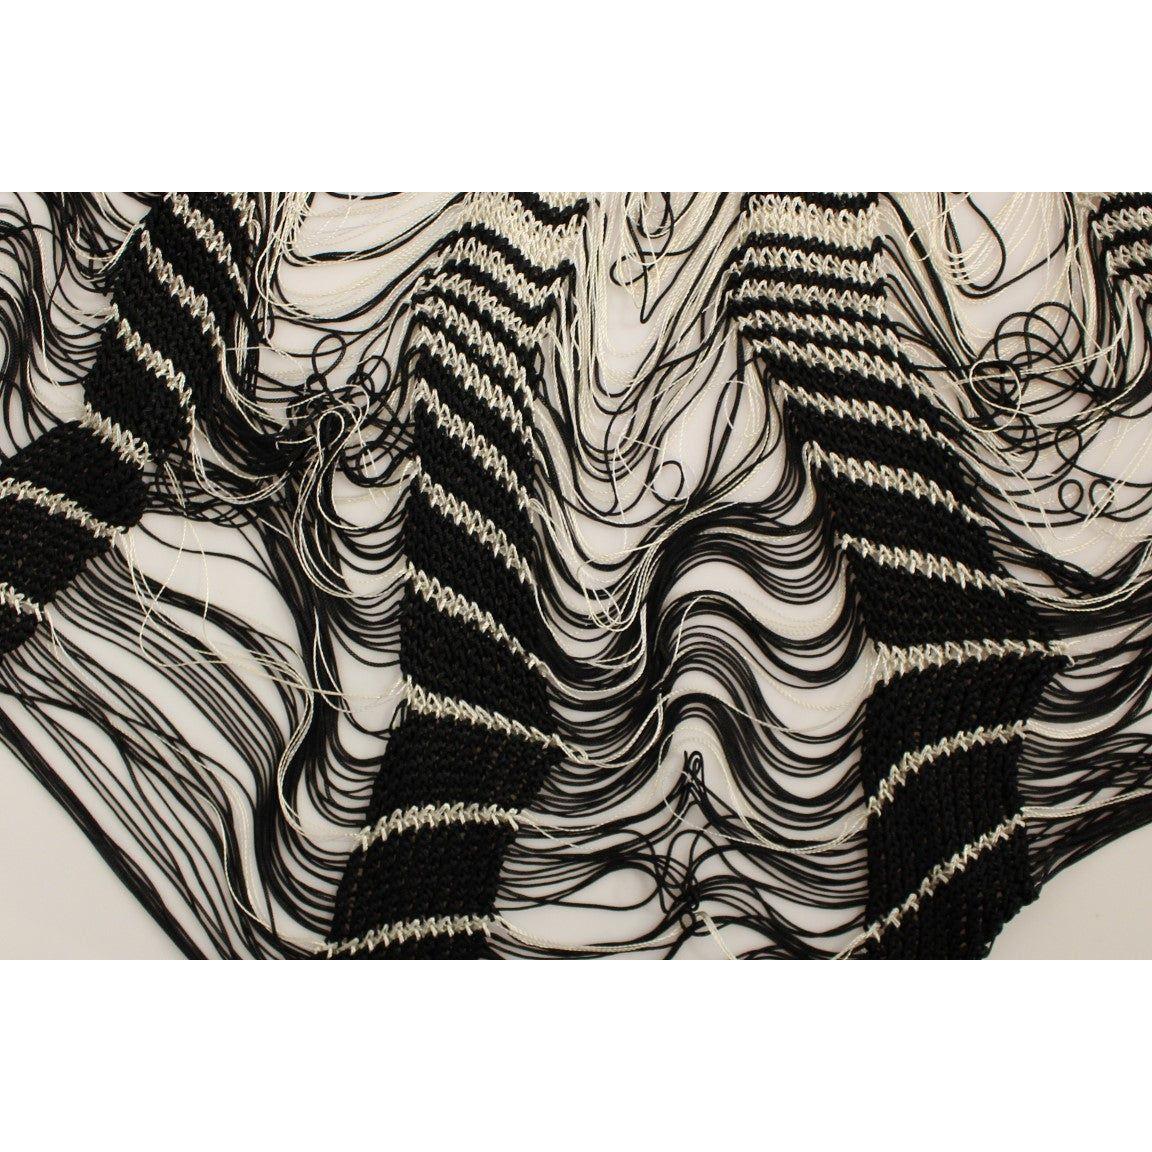 Alice PalmerChic Black & White Knitted SkirtMcRichard Designer Brands£259.00